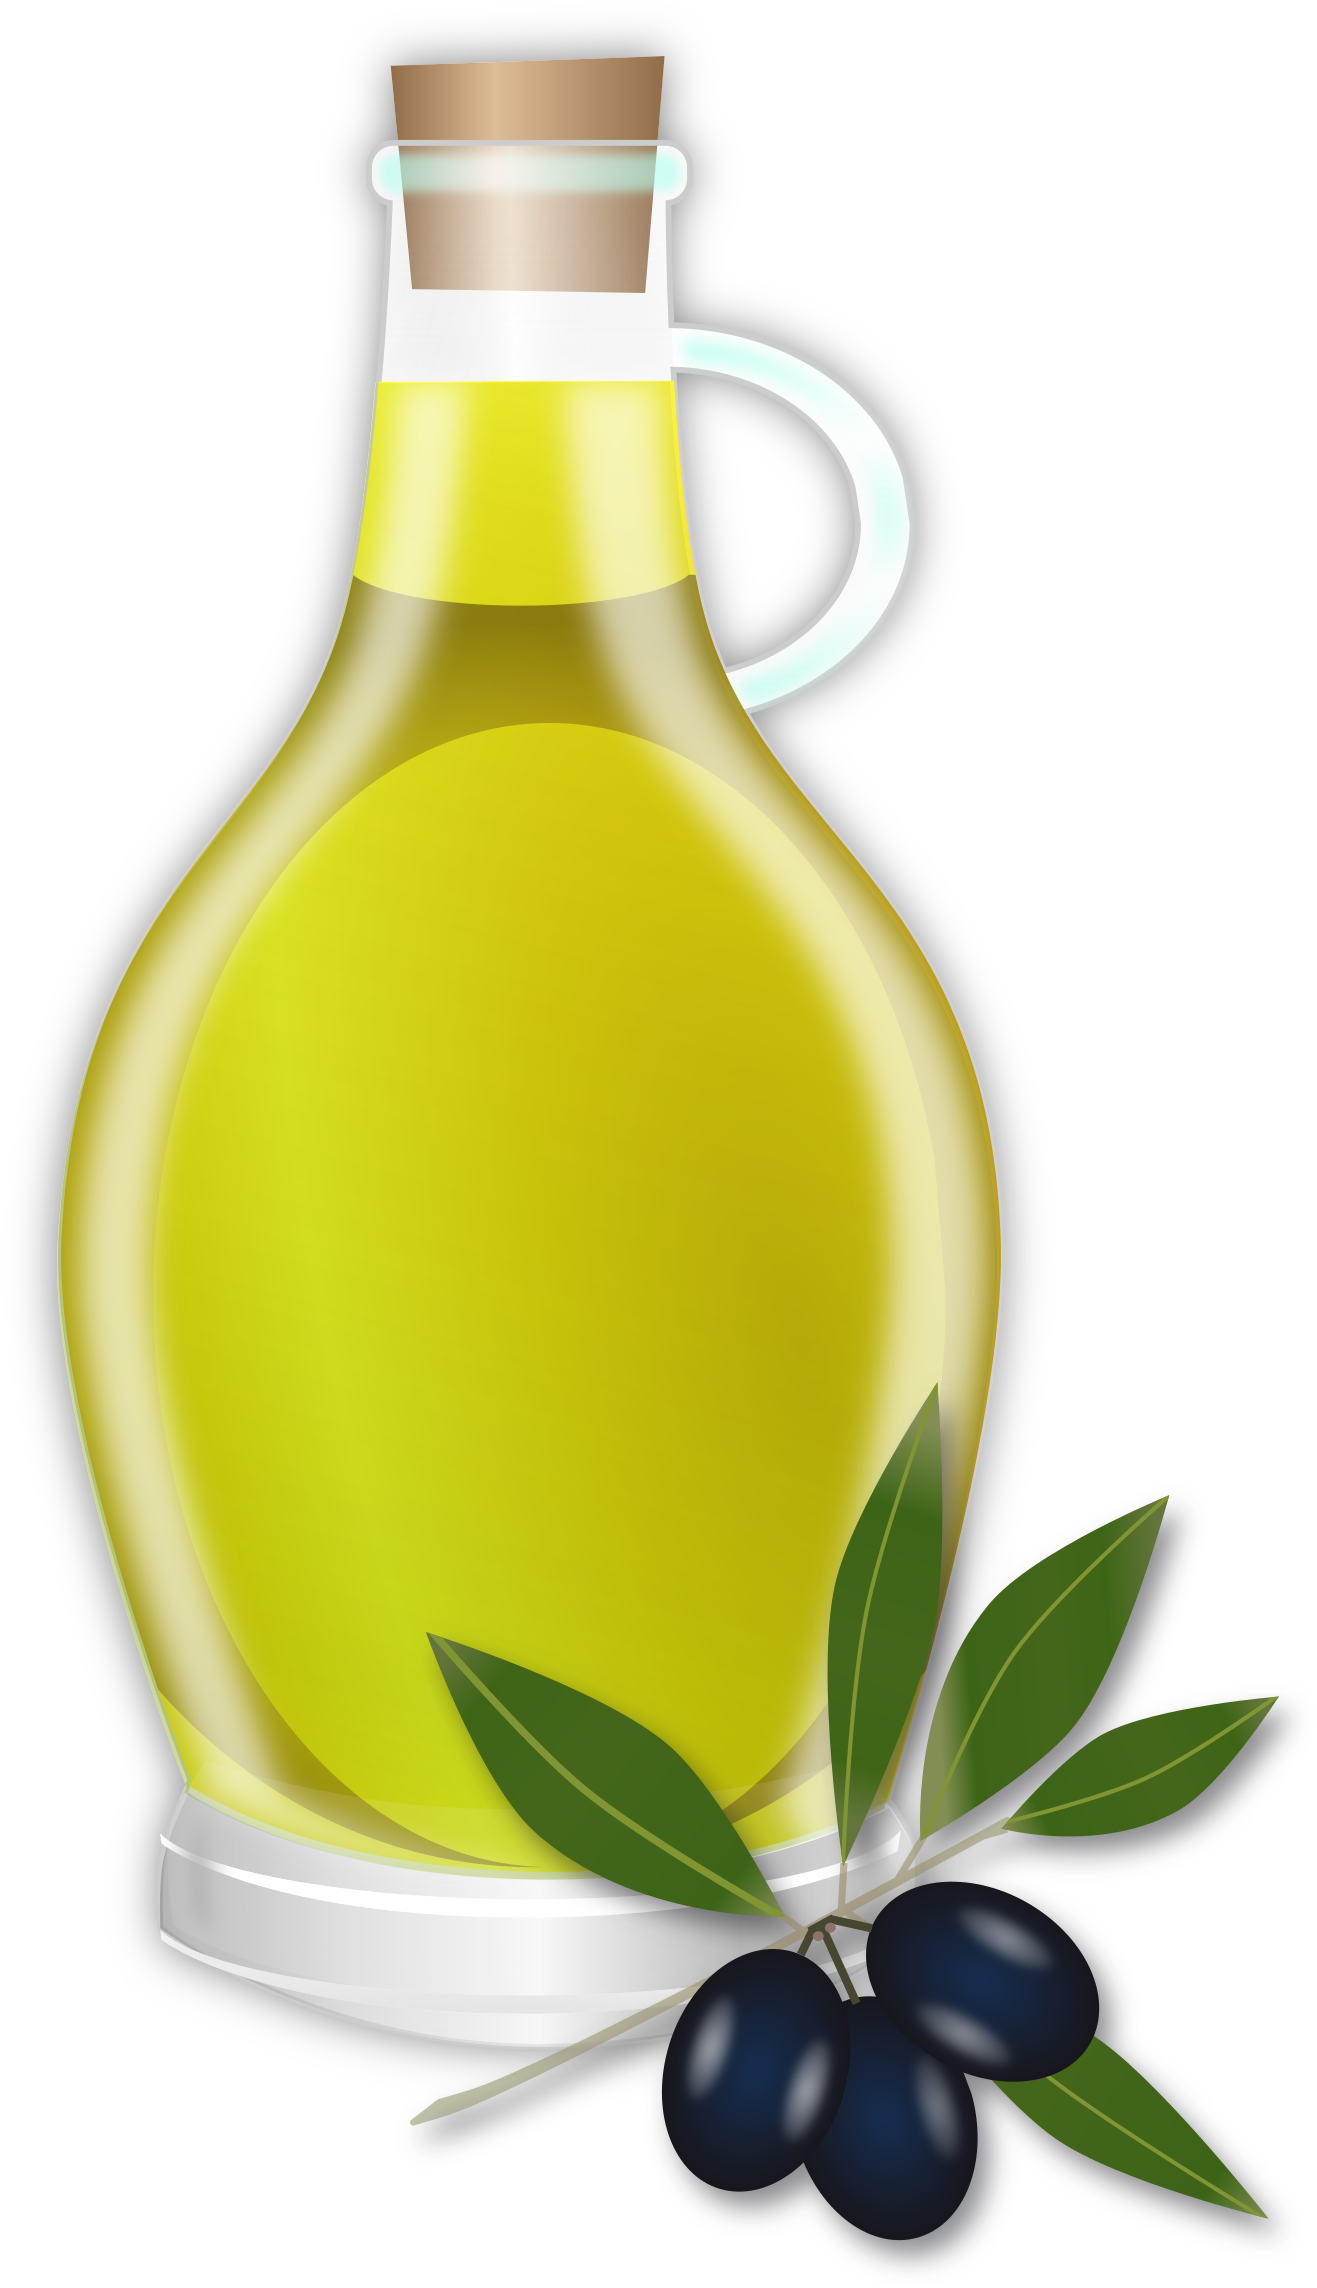 A bottle of olive oil. Олив Ойл масло оливковое. Бутылка для масла. Оливковое масло без фона. Масло растительное с оливковым.